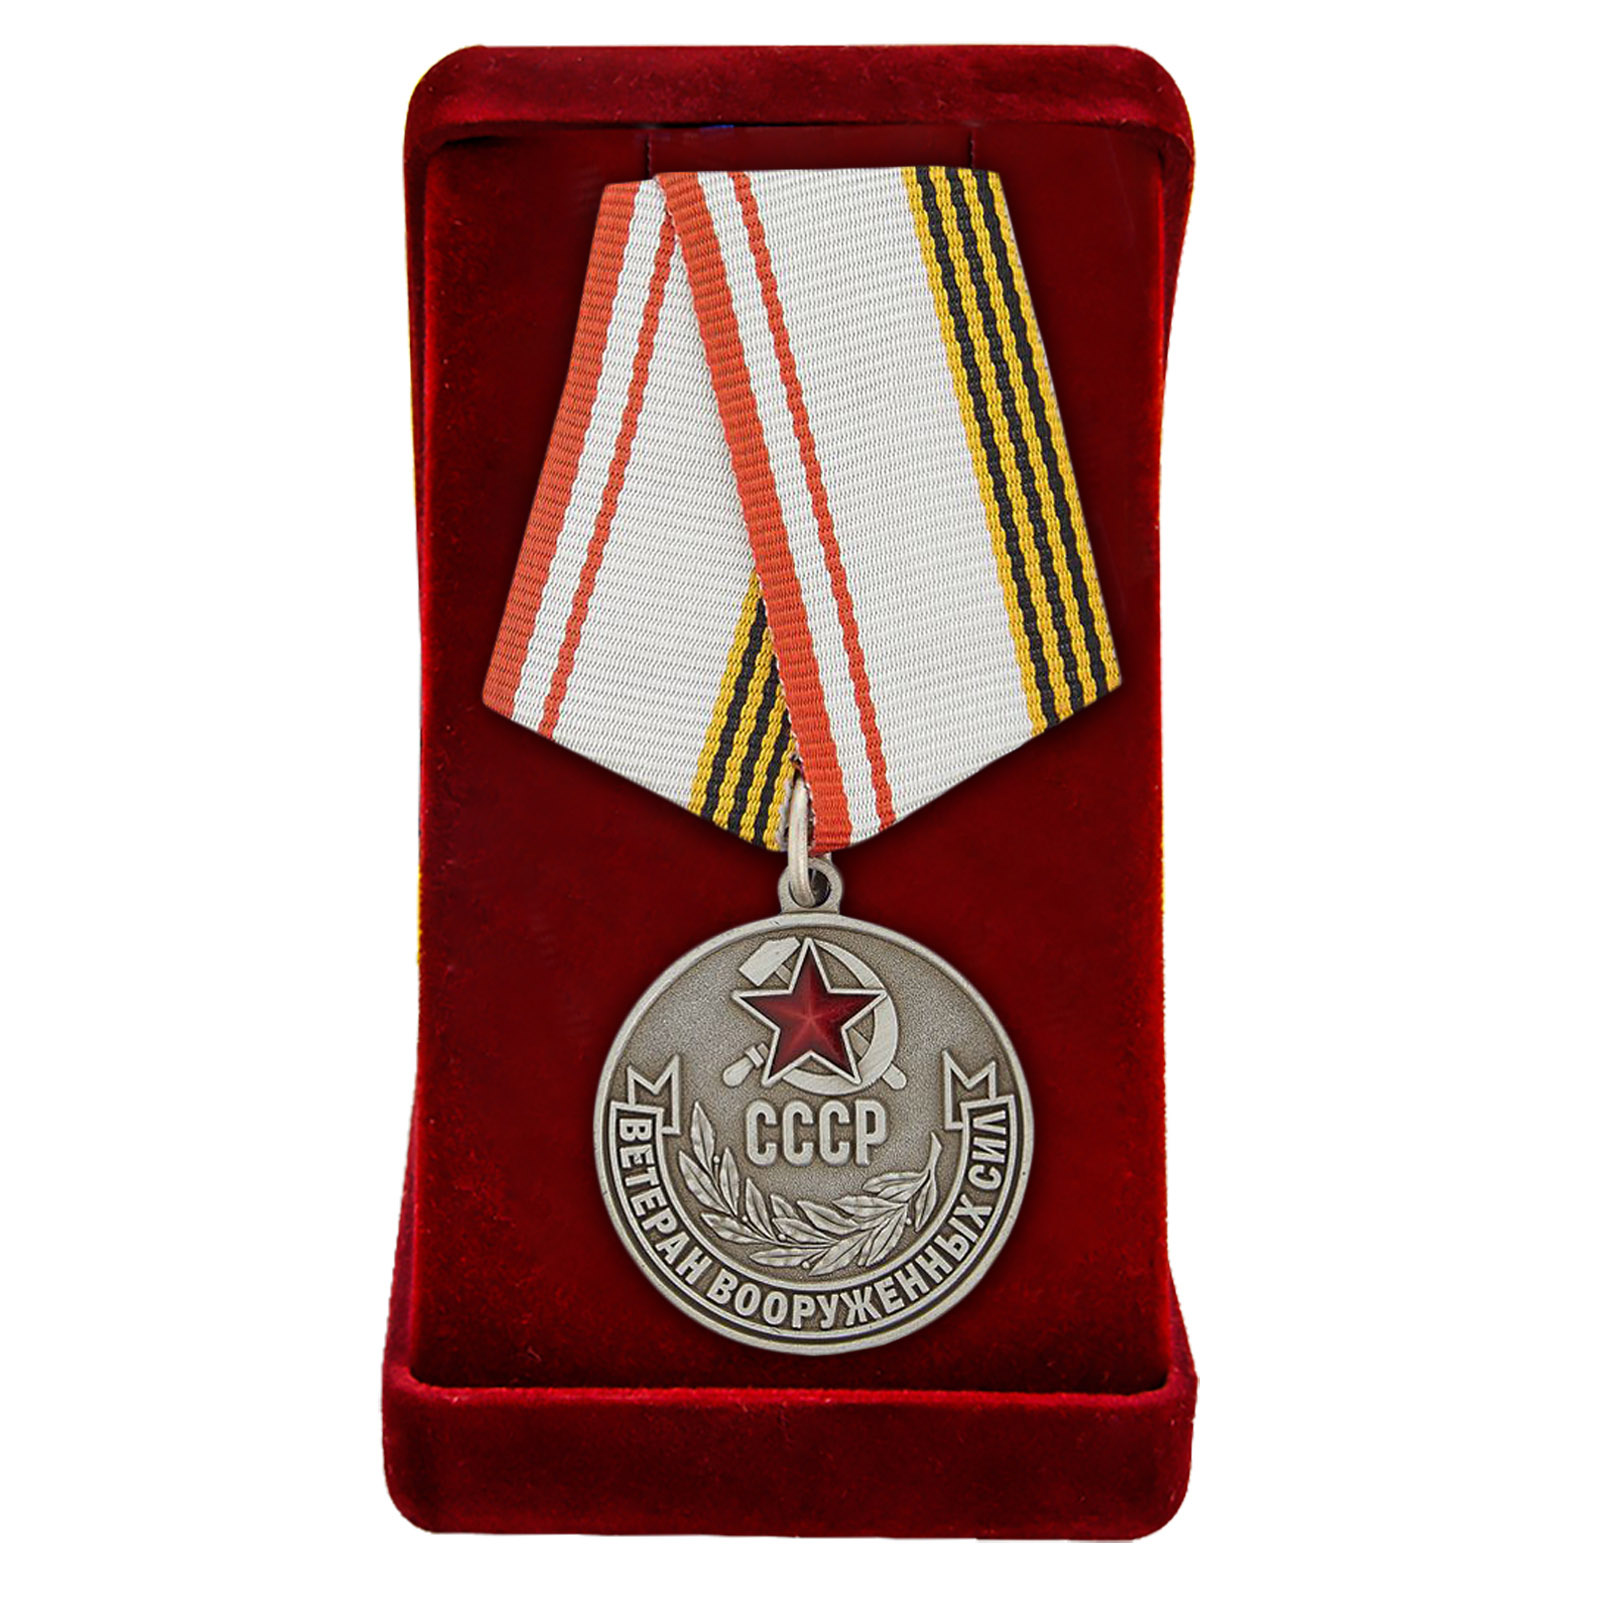 Купить памятную медаль ветерану с доставкой в любой город